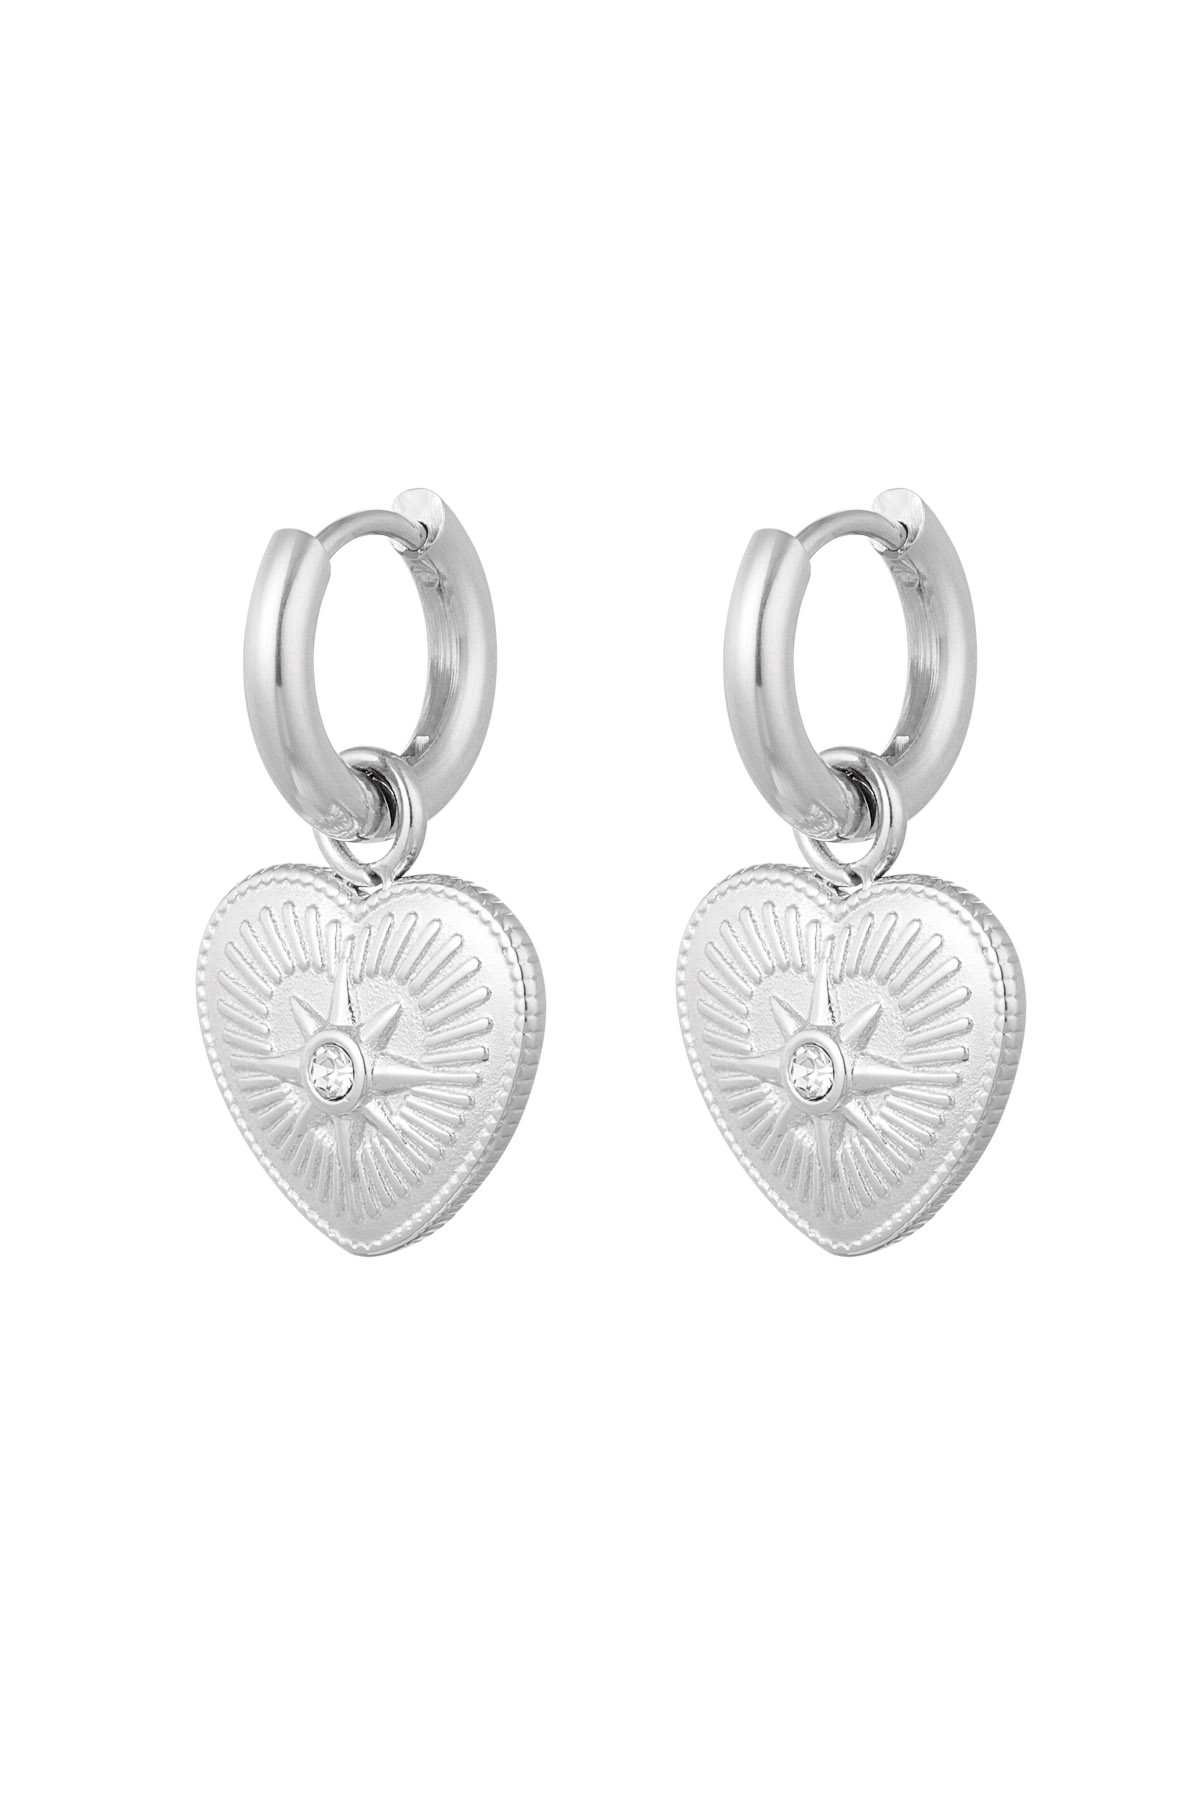 Ohrringe Herzmünze mit Stein - Silber